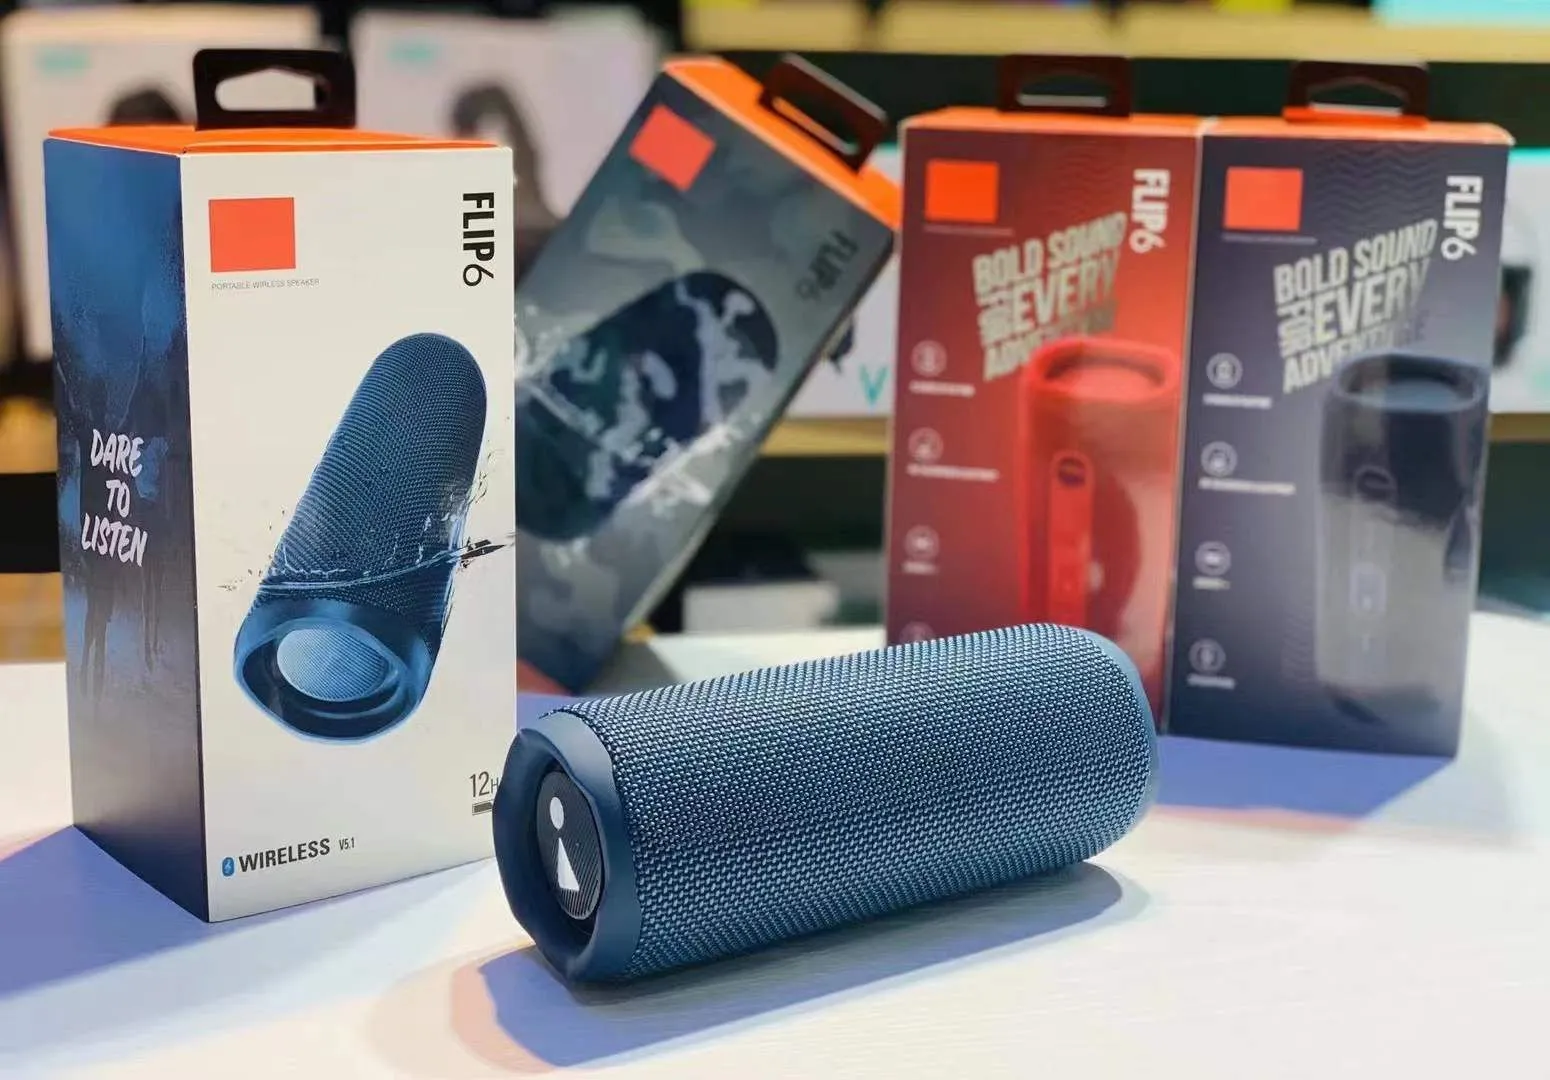 Kablosuz Bluetooth Hoparlörler Flip 6 Taşınabilir Hoparlör Cep Telefonu Güçlü Su Geçirmez Bas Profesyonel Ses Subwoofer Siyah Kırmızı Mavi Kamuflaj